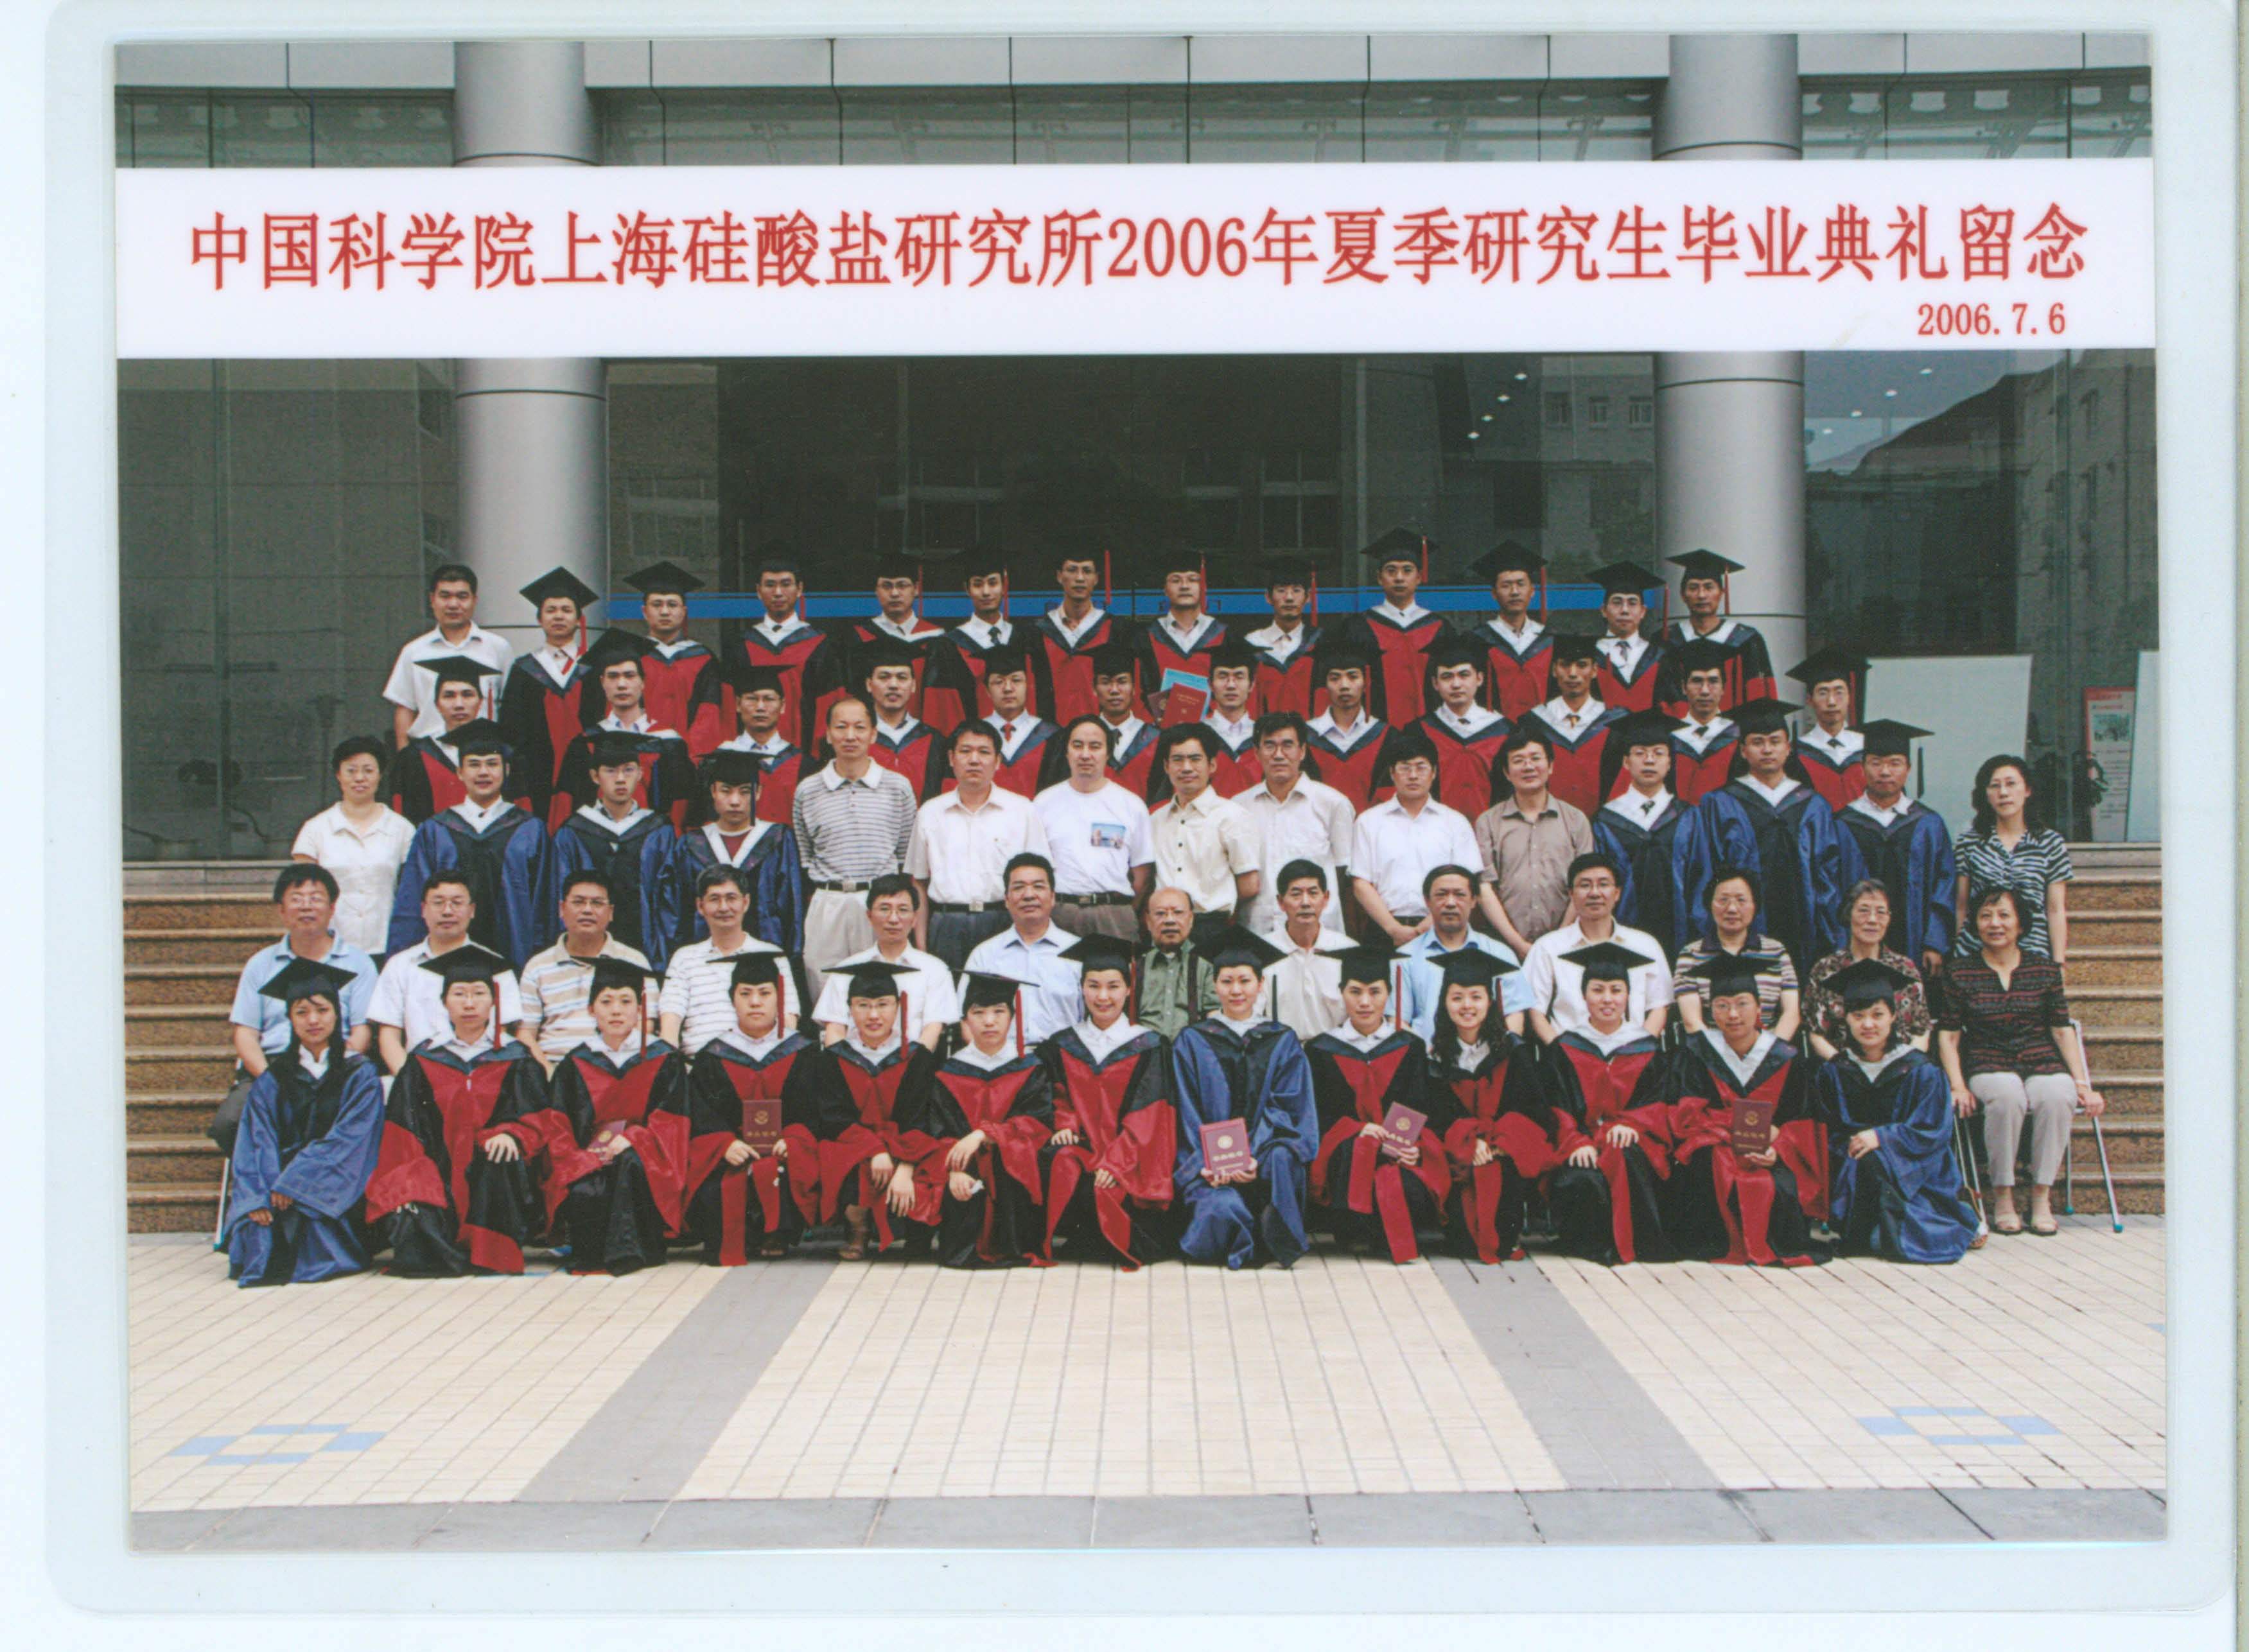 2006年7月6日郭景坤参加研究生毕业典礼.jpg